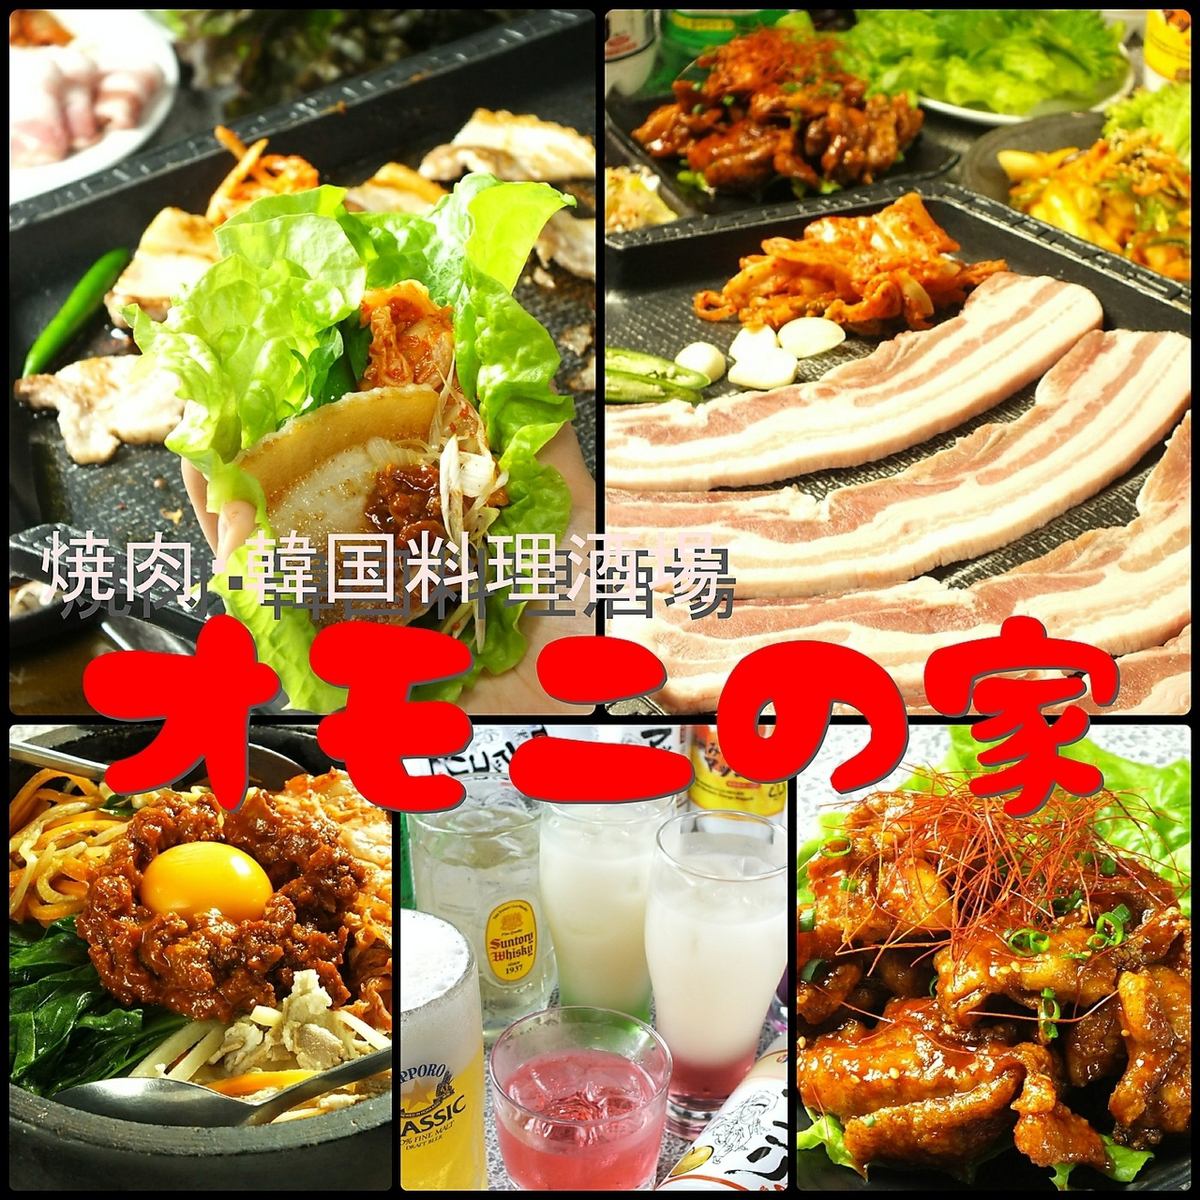 從45種以上的菜單中選擇4種菜餚+ 150分鐘的山參骨肉全友暢飲☆女士專用聚會當然3000日元